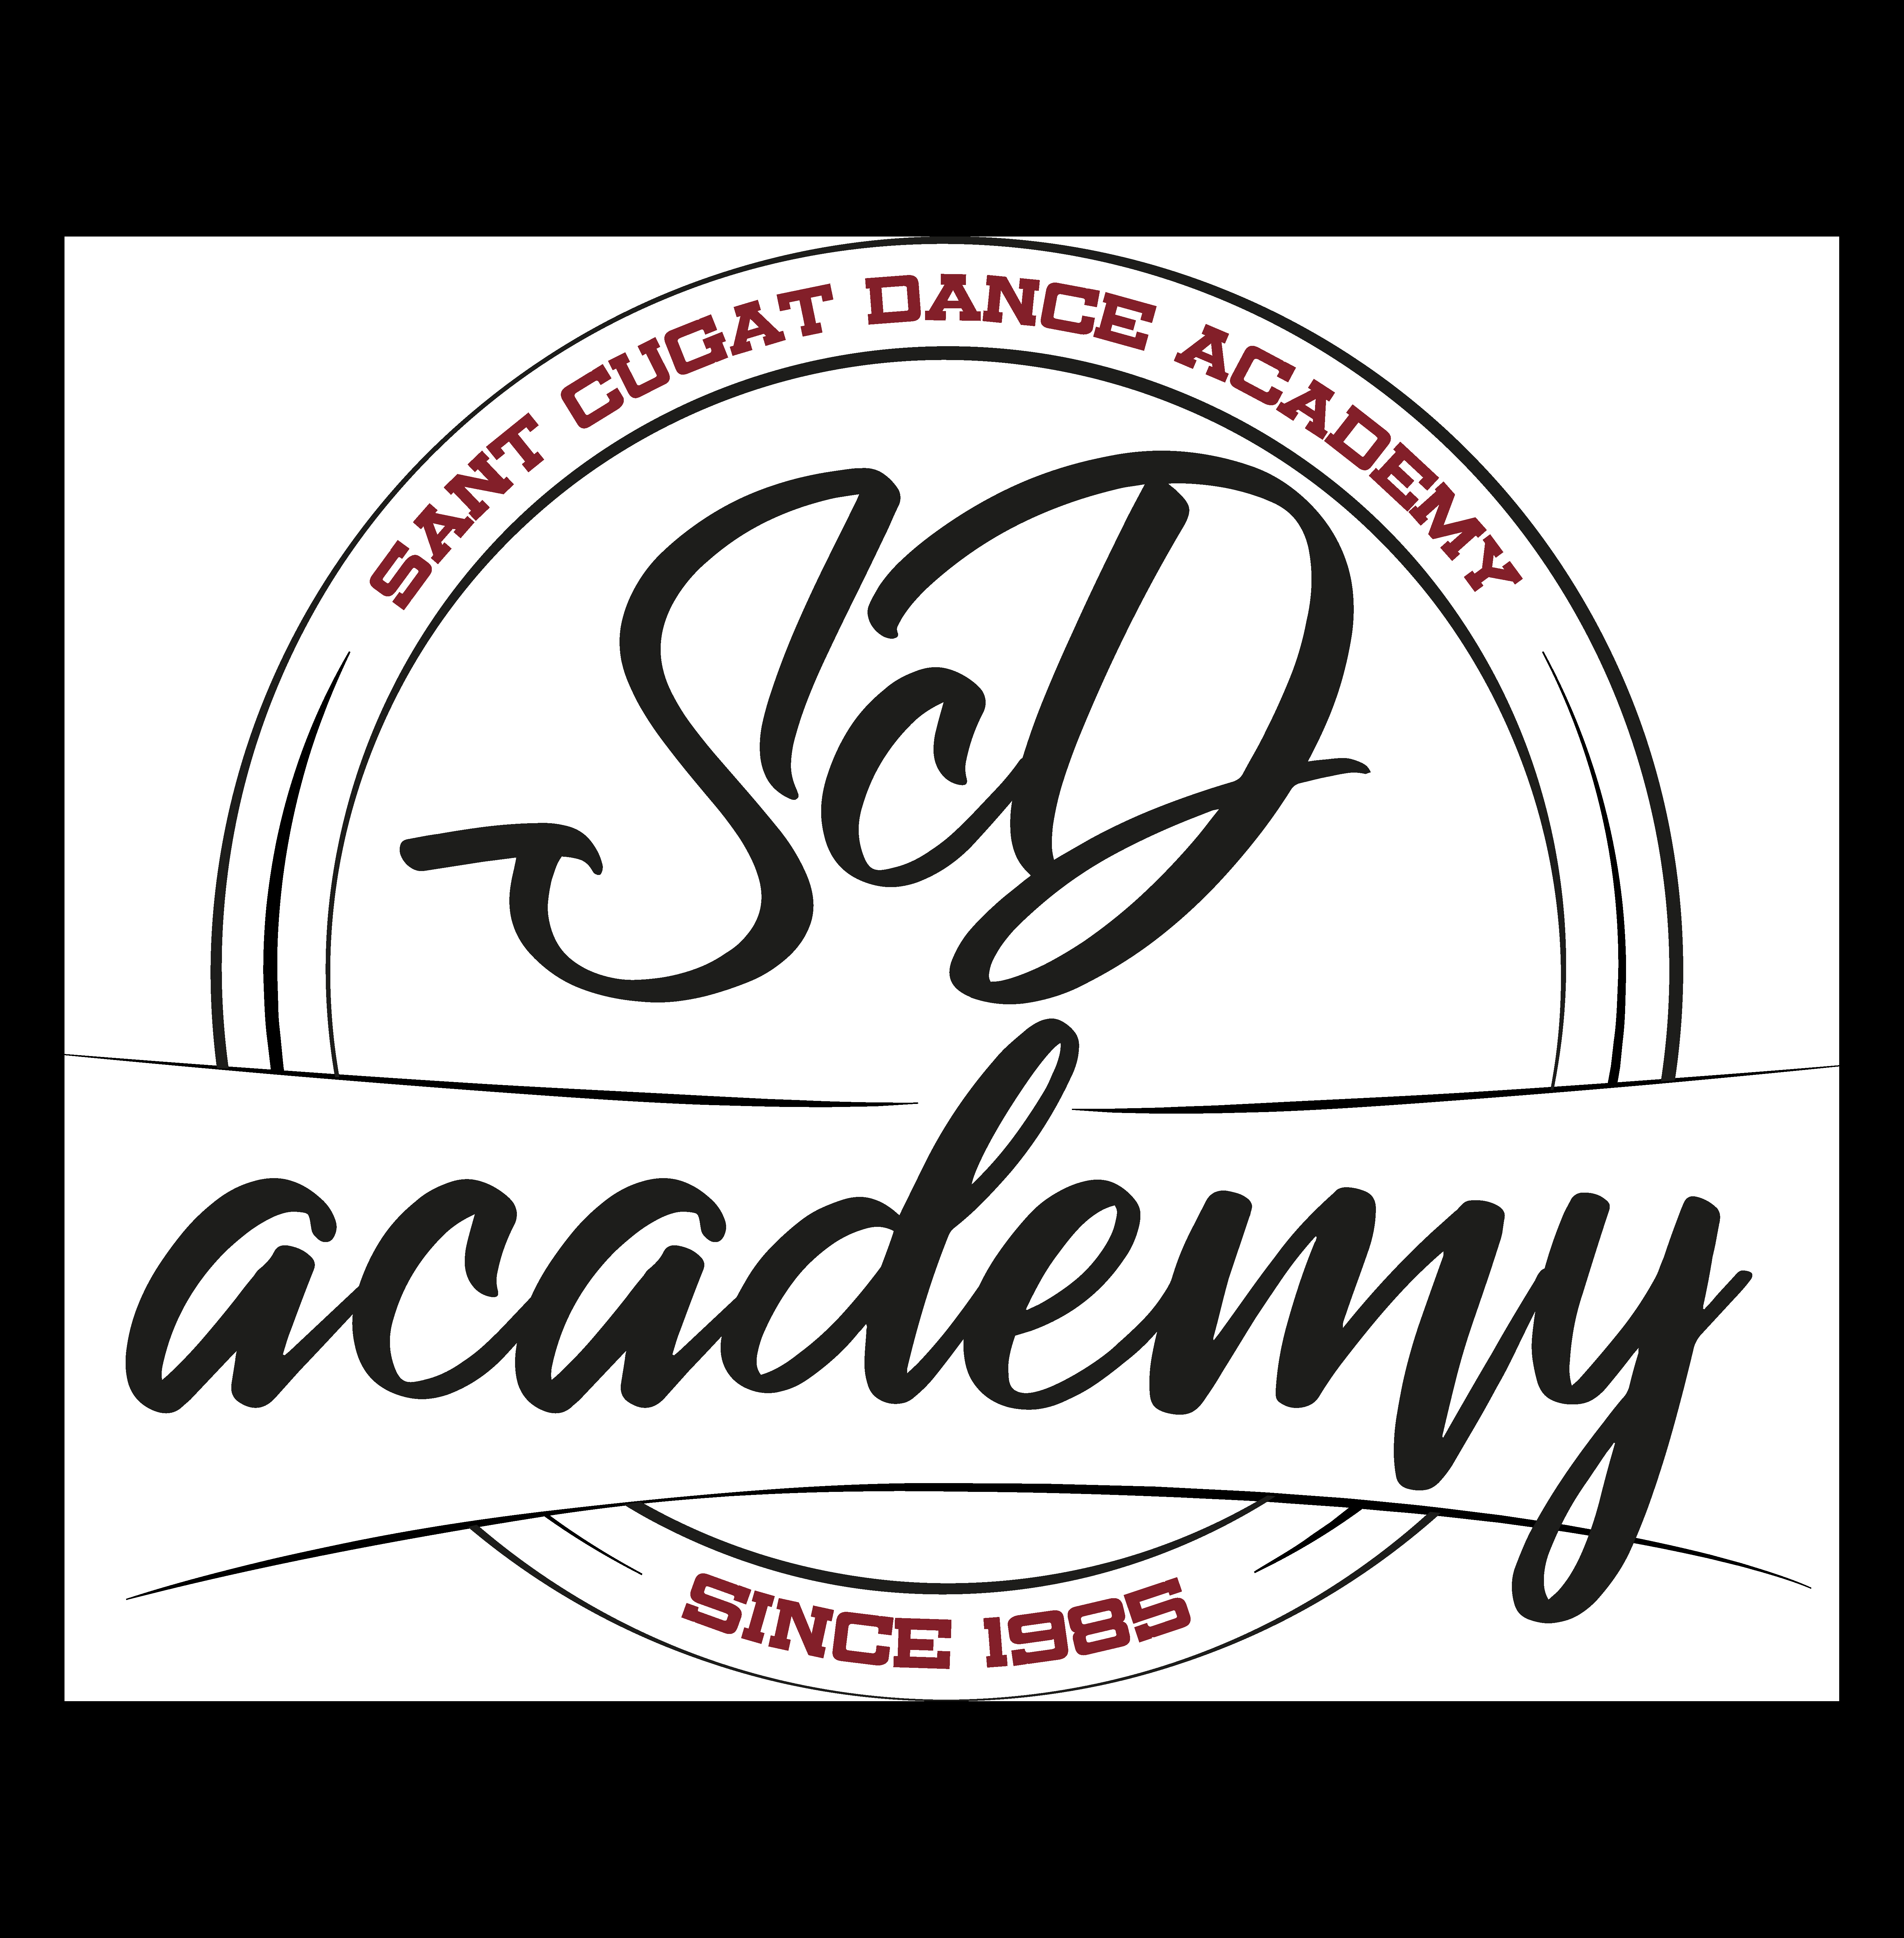 Sant Cugat Dance Academy